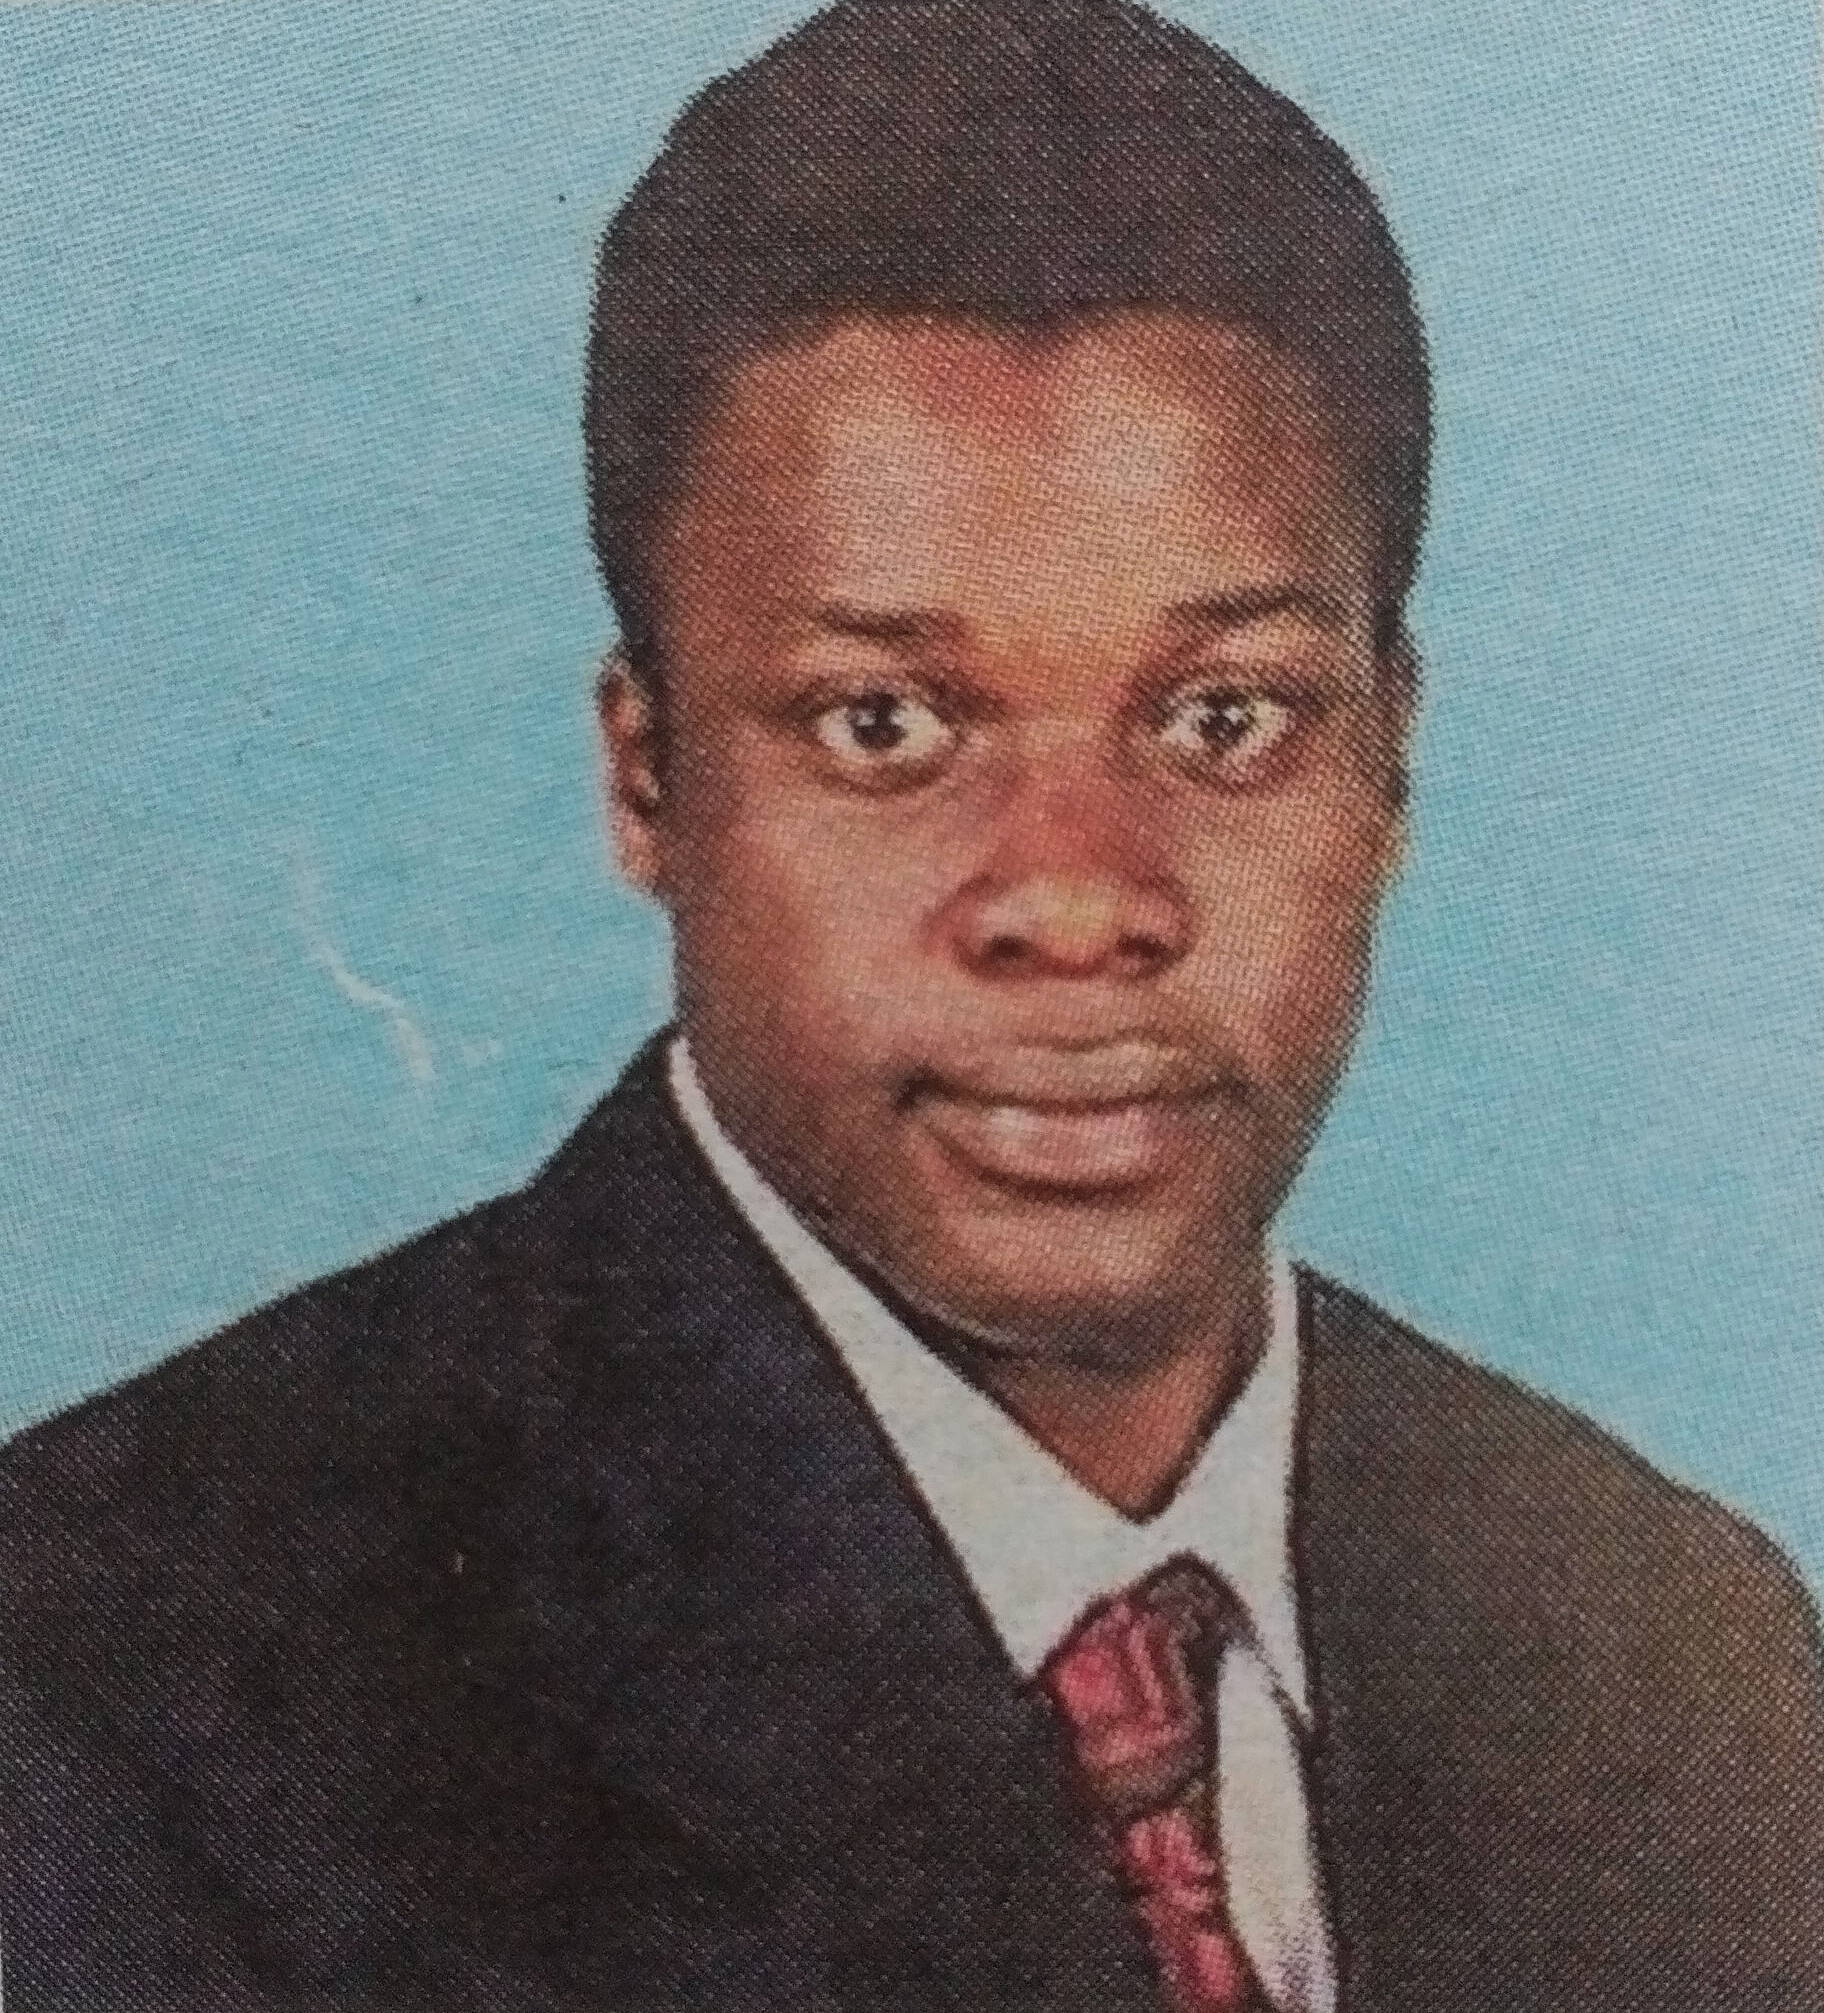 Obituary Image of Anatole lsiye Ndombi 28/05/1986-26/04/2015